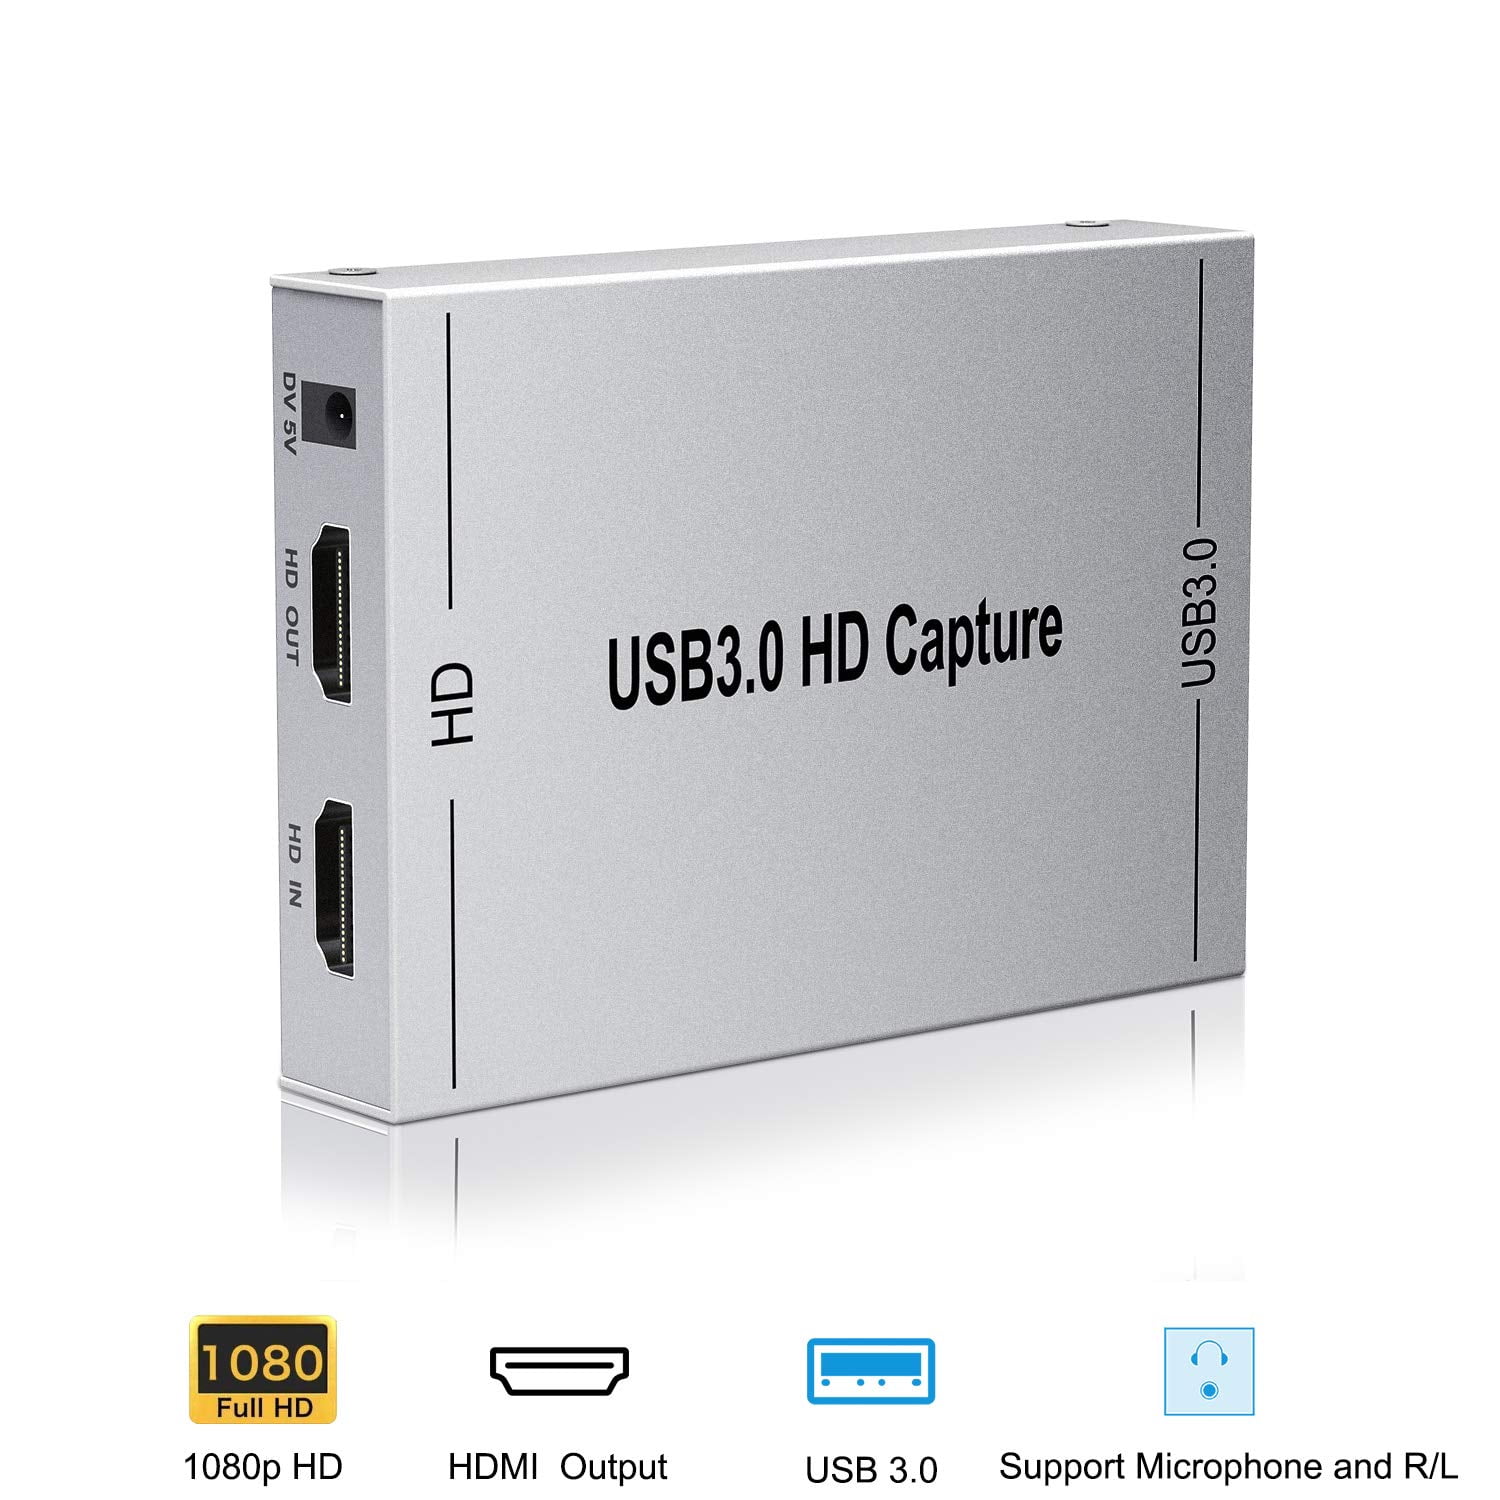 Kdely Carte de Capture Vidéo HDMI USB 3.0 avec Microphone HD Portatile Plug and Play Game Video Capture Card Boîtier Denregistrement en Direct pour Windows/Mac OS X/Android/Linux 